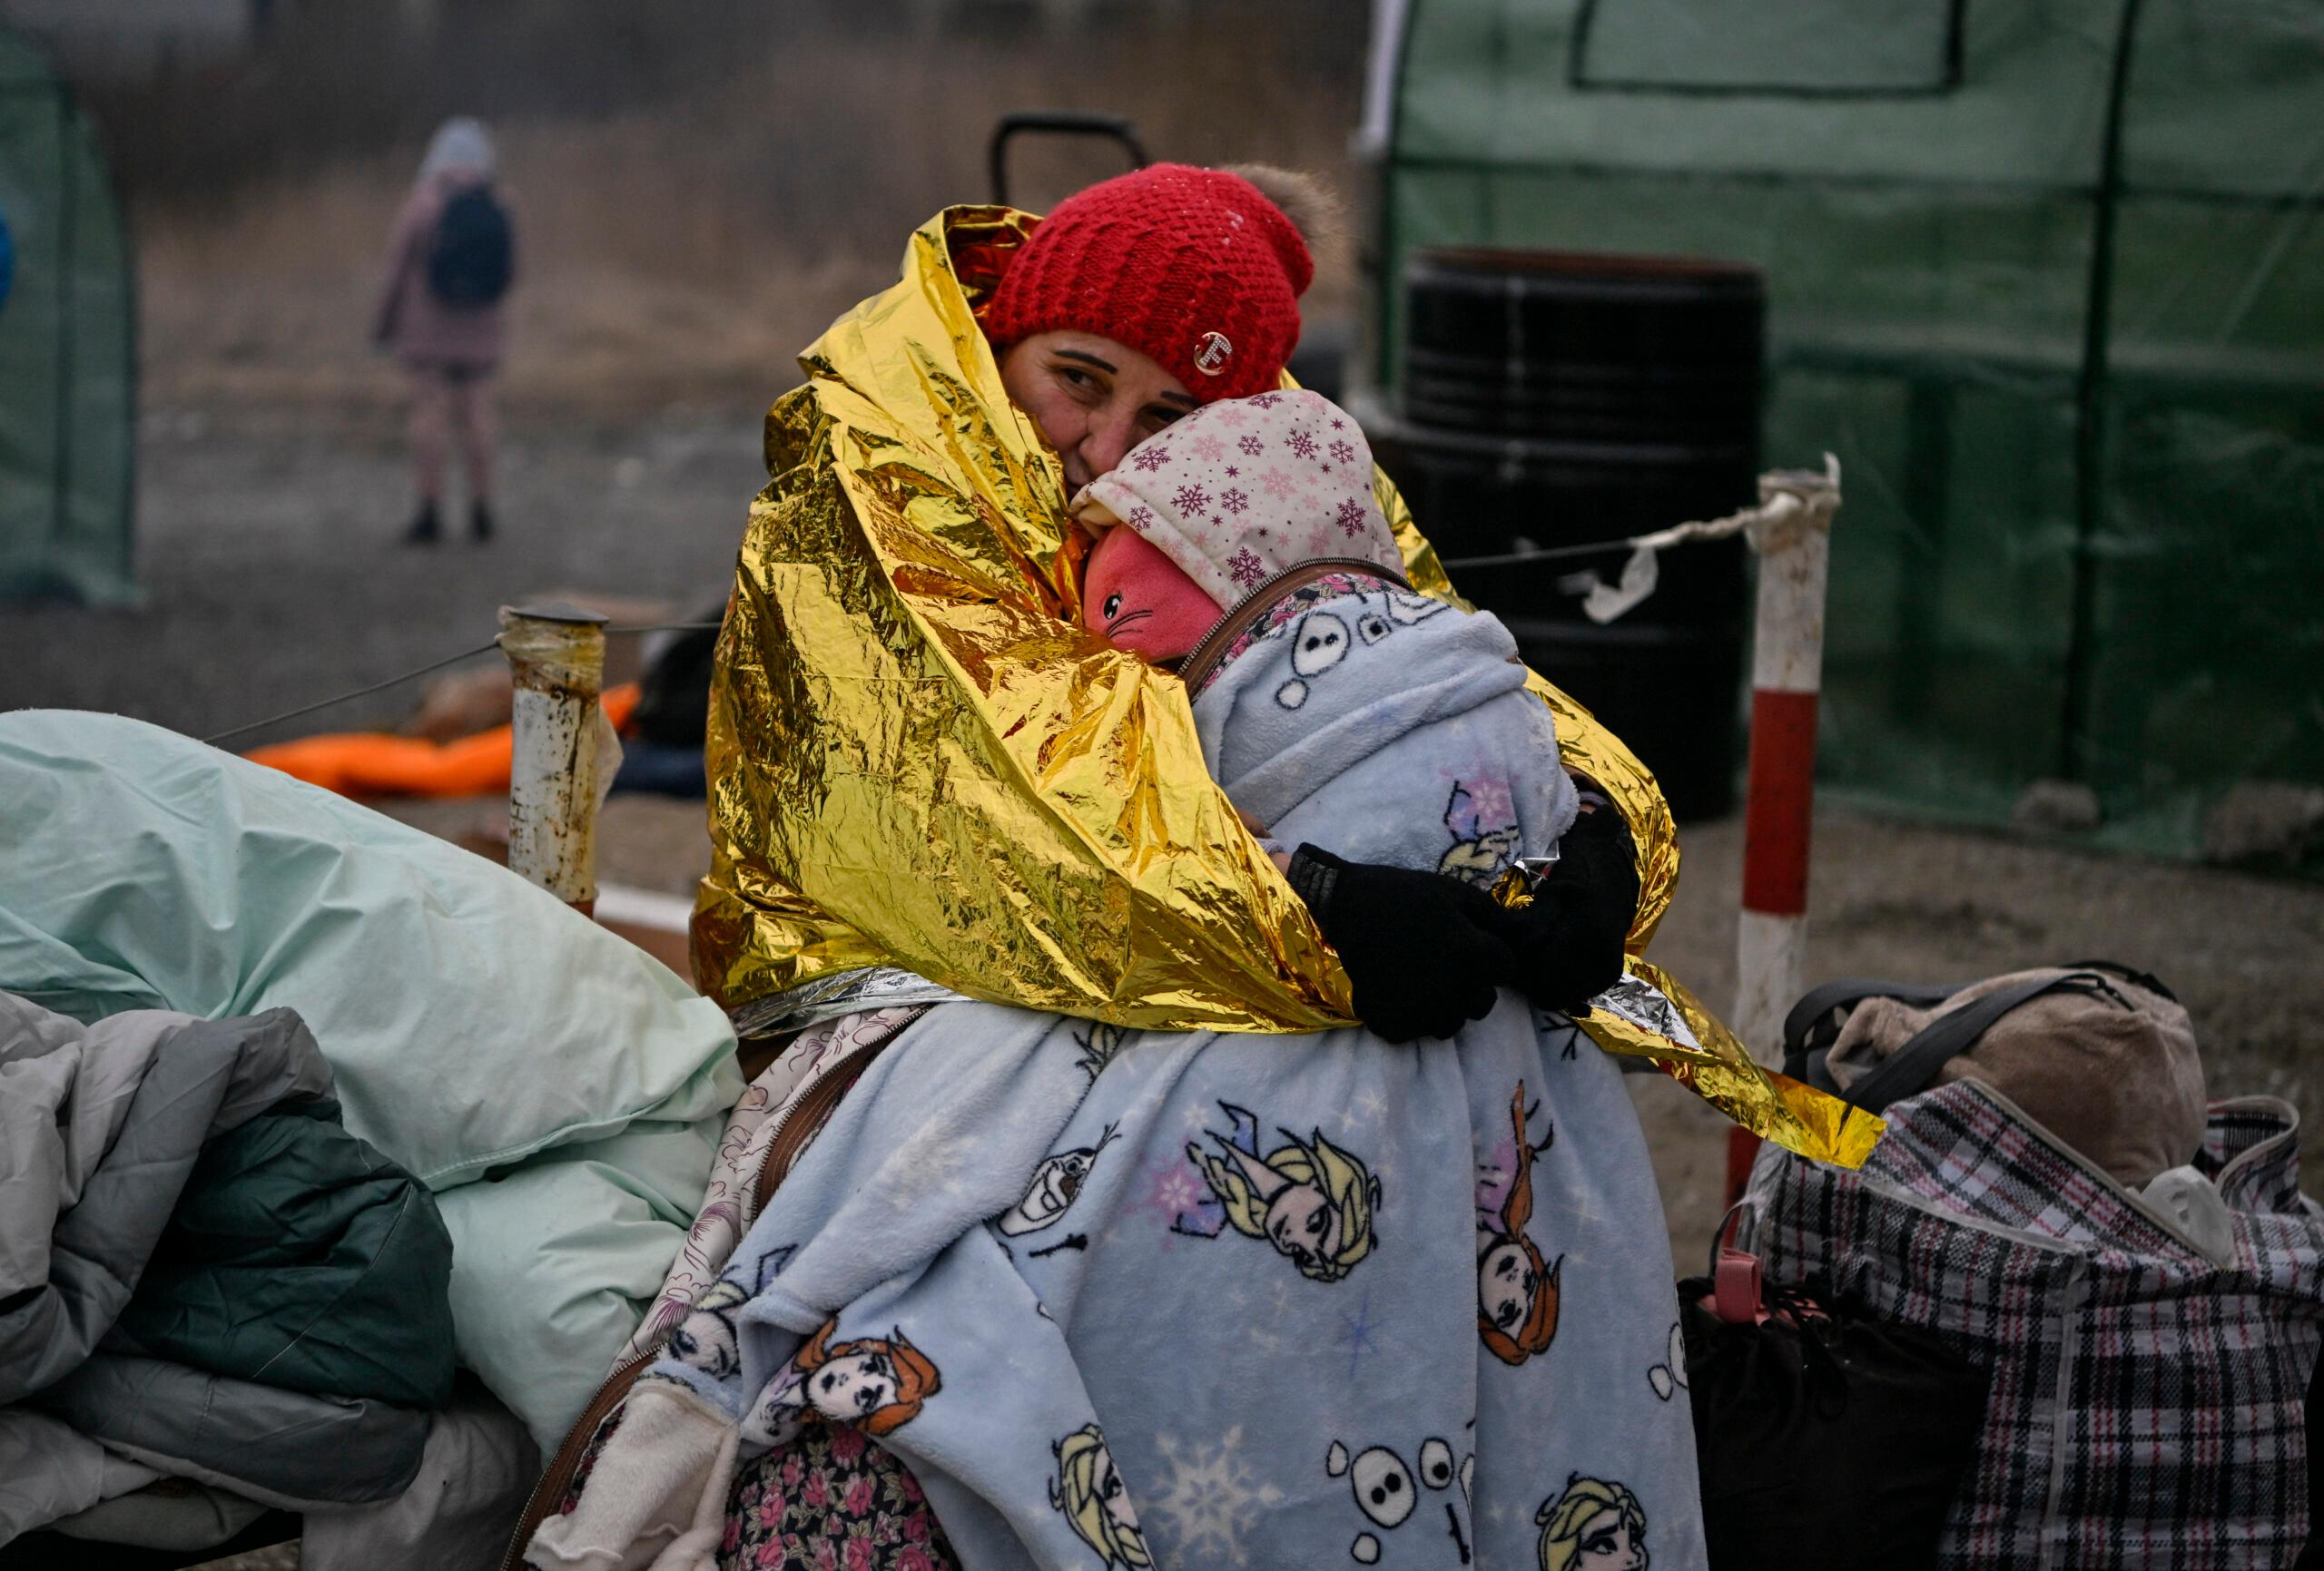 Objęte i przykryte kocem termicznym mata i dziecko, uchodźcy z Ukrainy na polskiej granicy